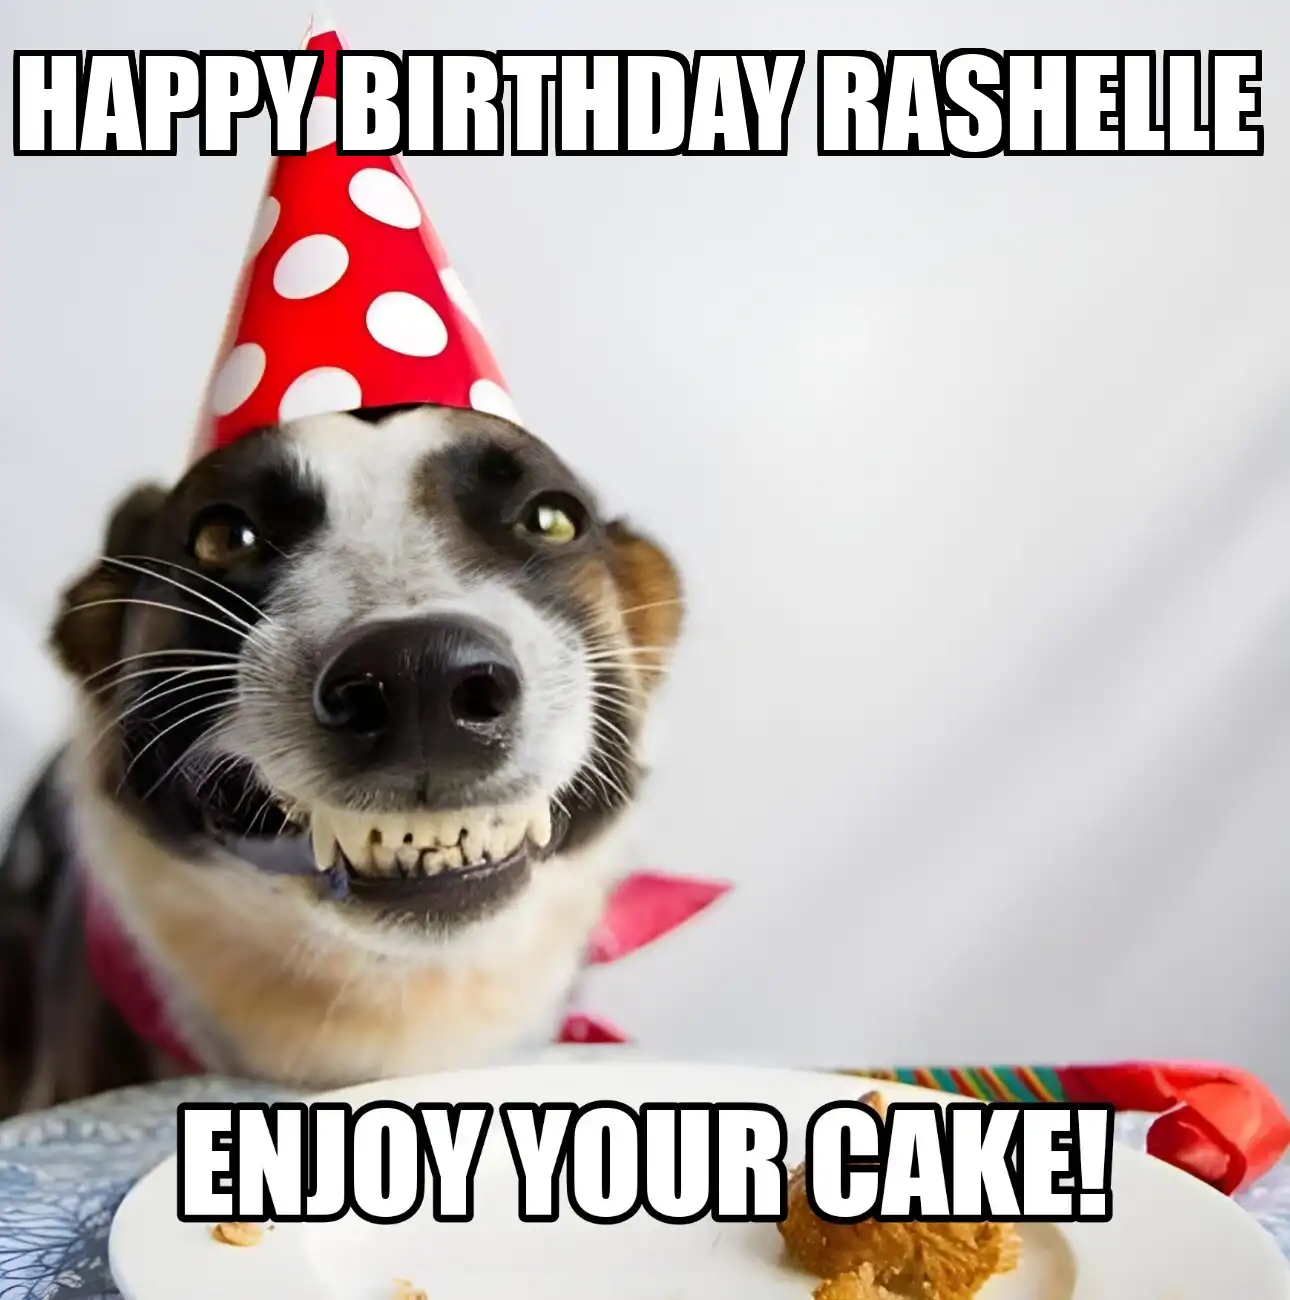 Happy Birthday Rashelle Enjoy Your Cake Dog Meme